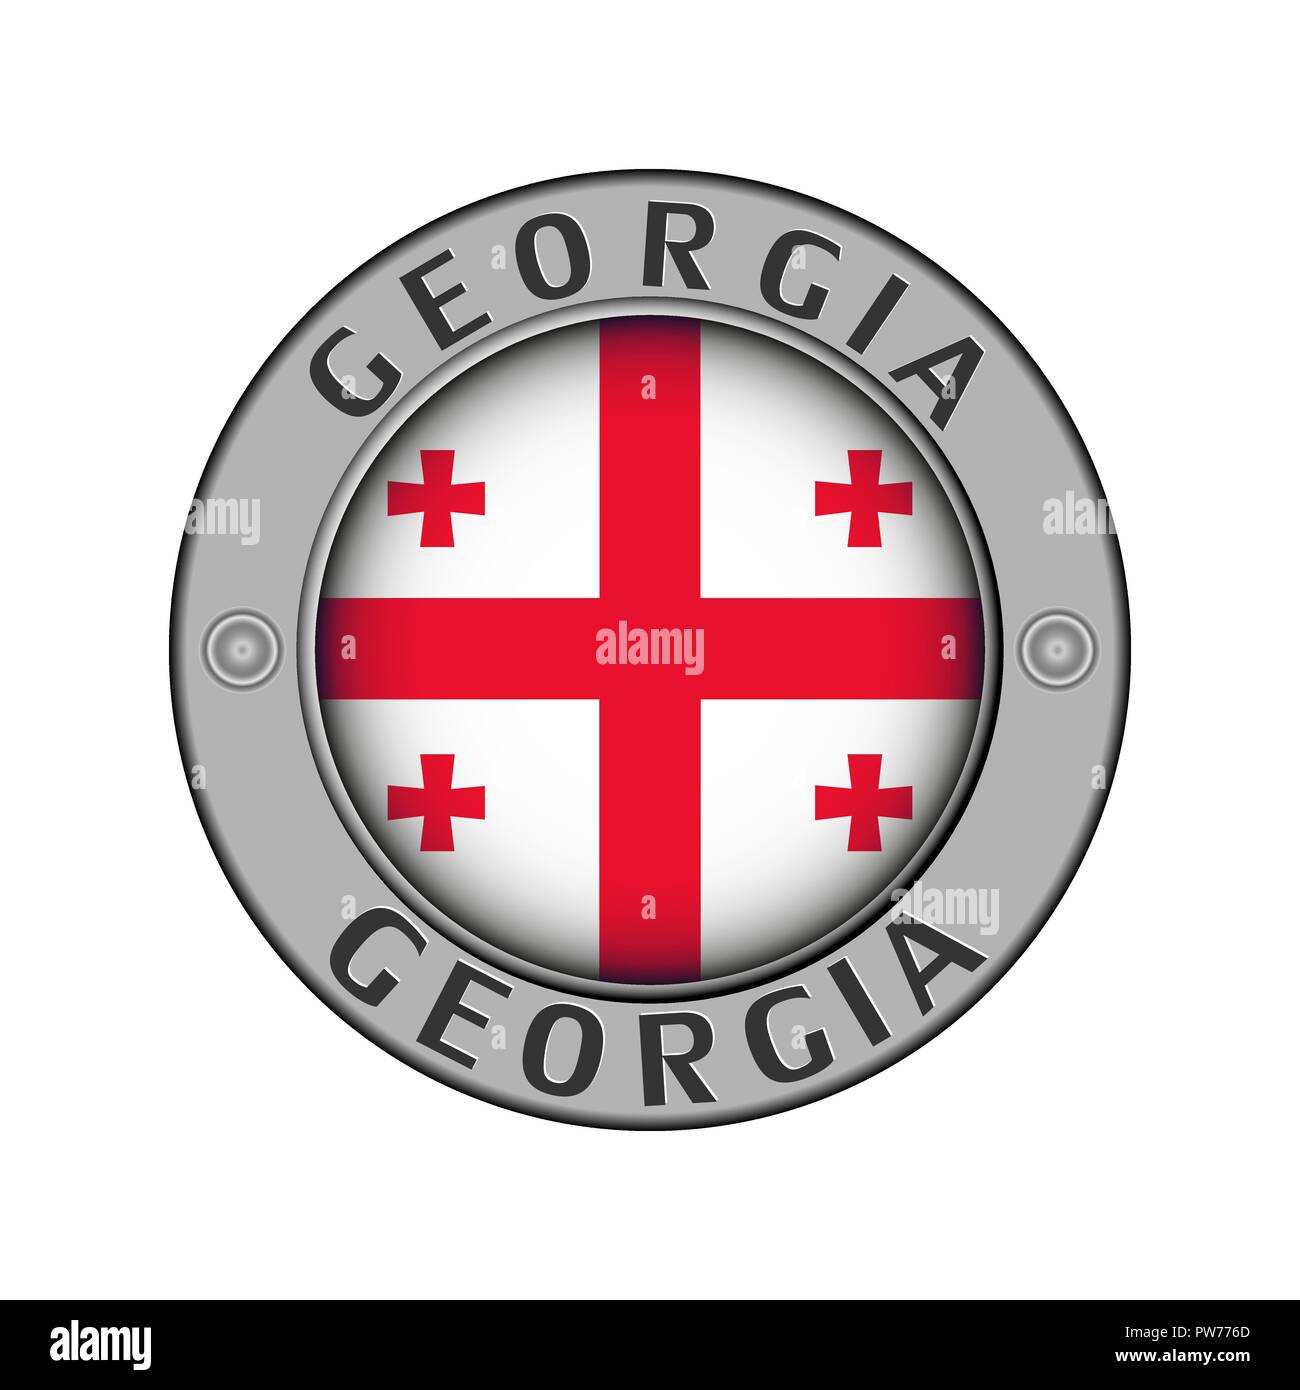 Rotondo di metallo medaglione con il nome del paese Georgia e un indicatore rotondo nel centro Illustrazione Vettoriale